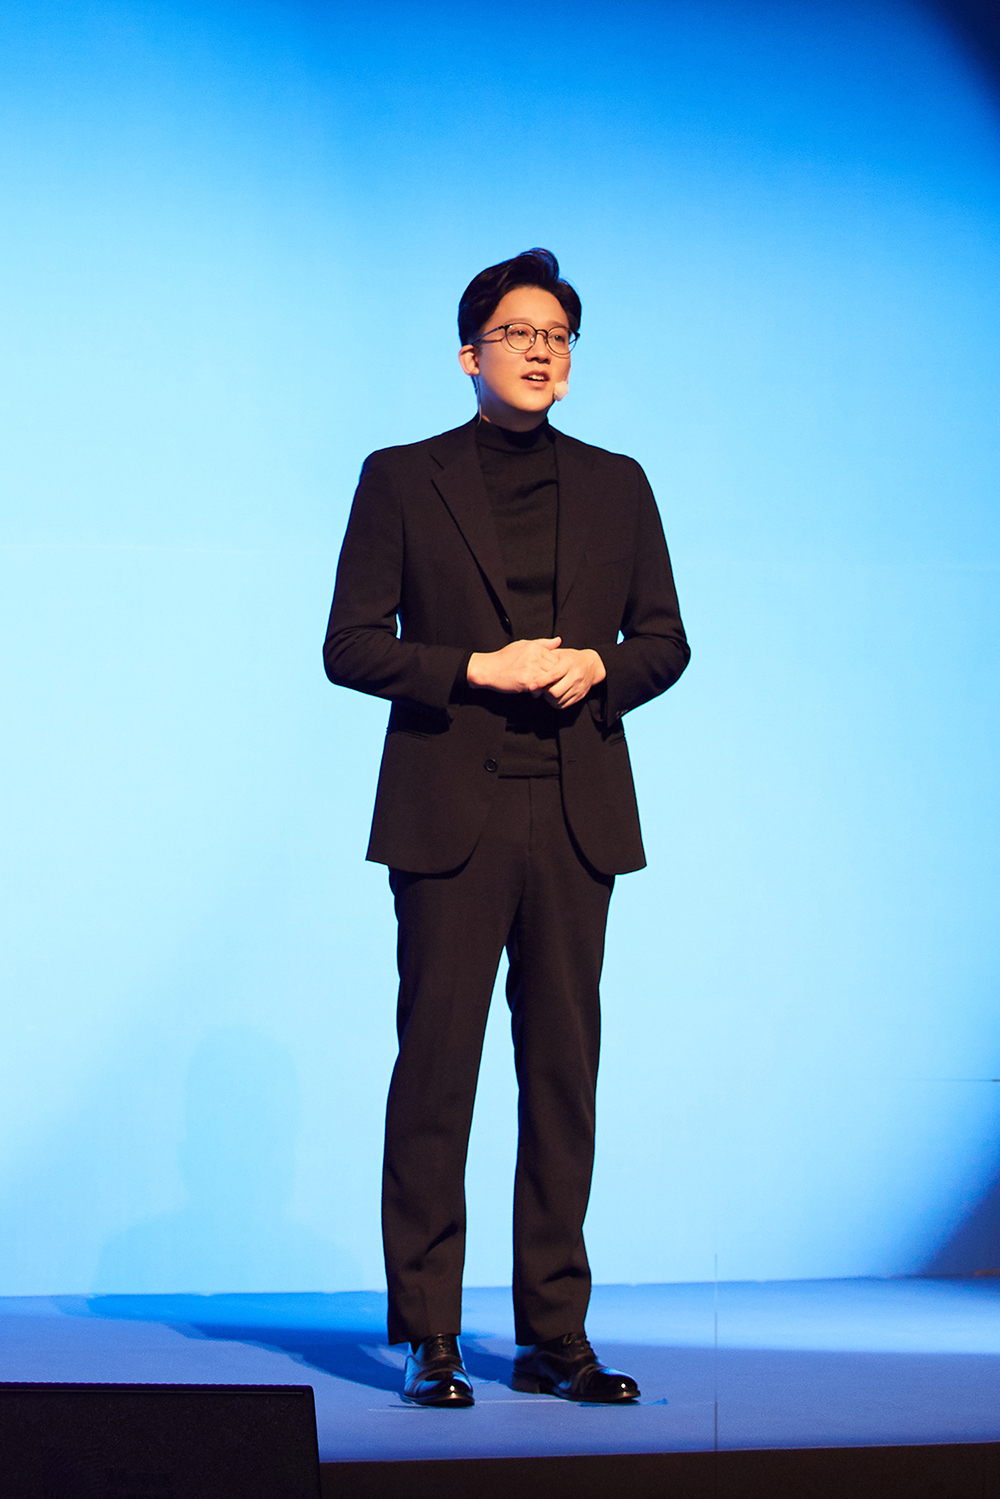 李圣洙代表出席“2021 STARTUPCON”图片 1.jpg